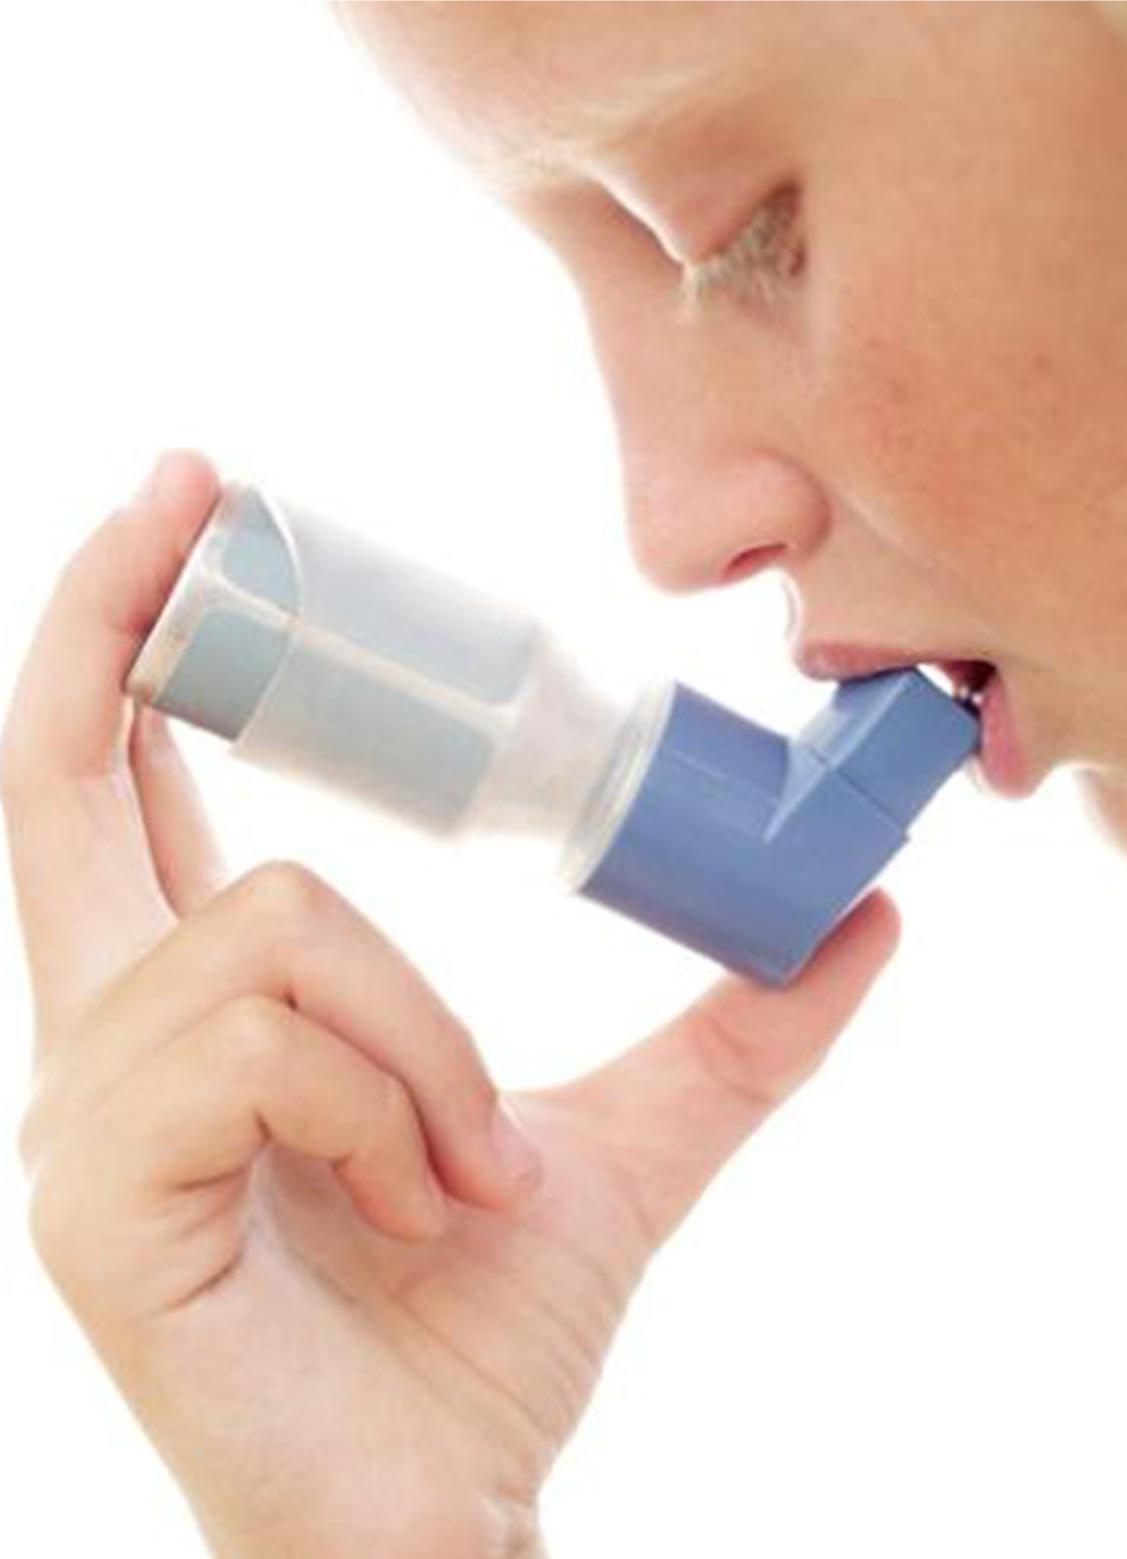 Заболевание астма лечение. Ингалятор при астме. Карманный ингалятор при бронхиальной астме. Человек с ингалятором. Ингалятор для астматиков человеку.